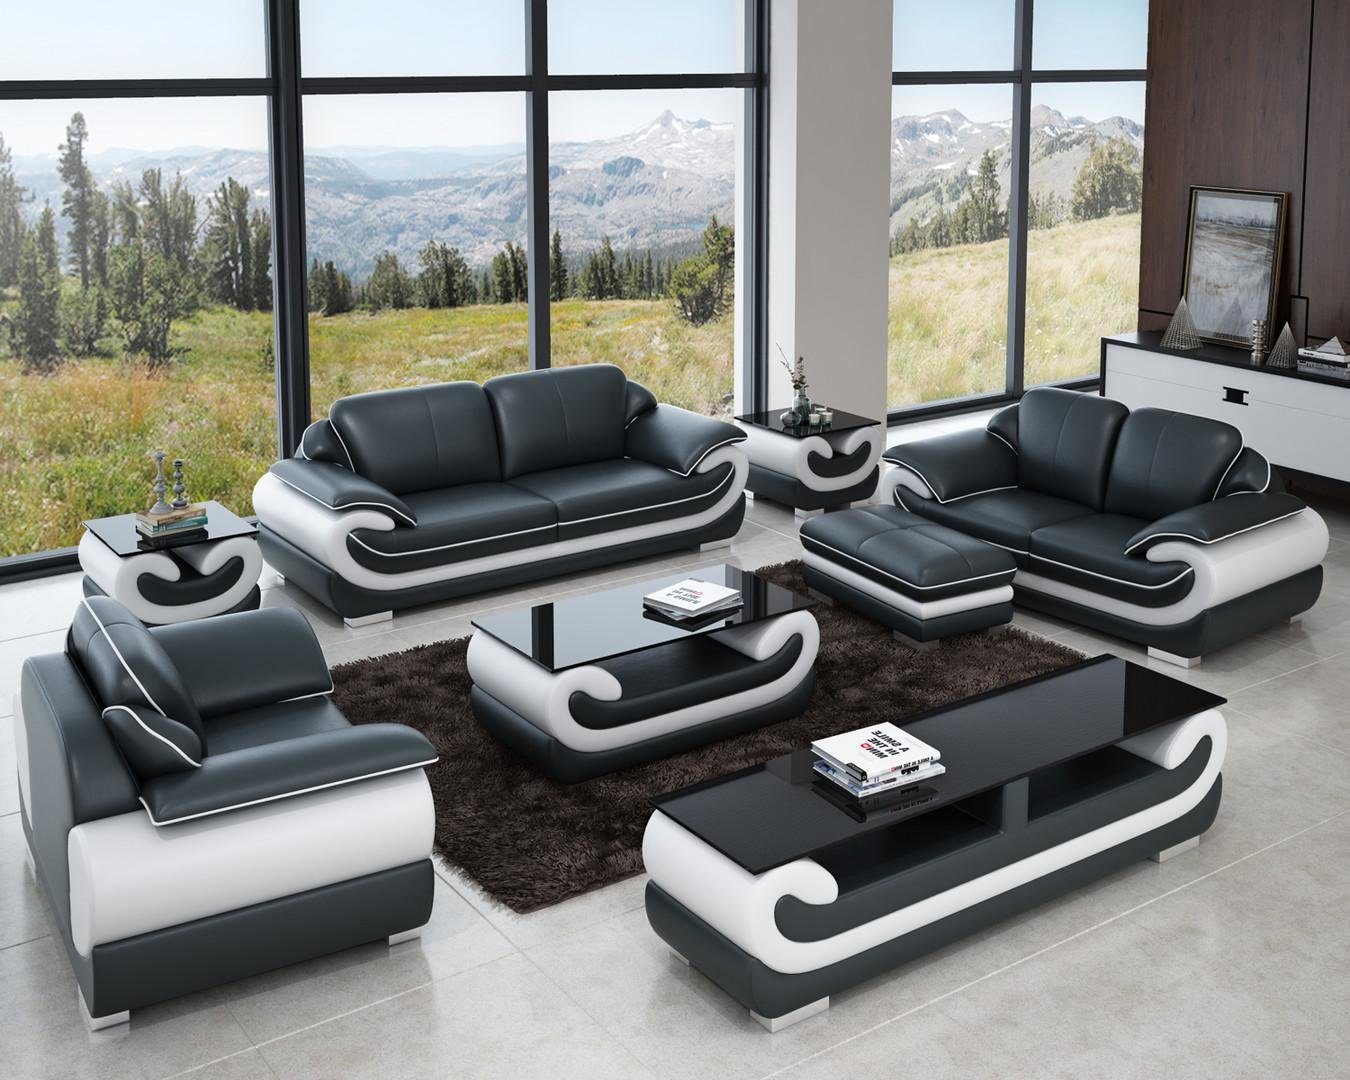 Couch JVmoebel Europe Wohnlandschaft Sitzer Design, Ledersofa in Sofa Grau/Weiß Garnitur Made 3+1+1